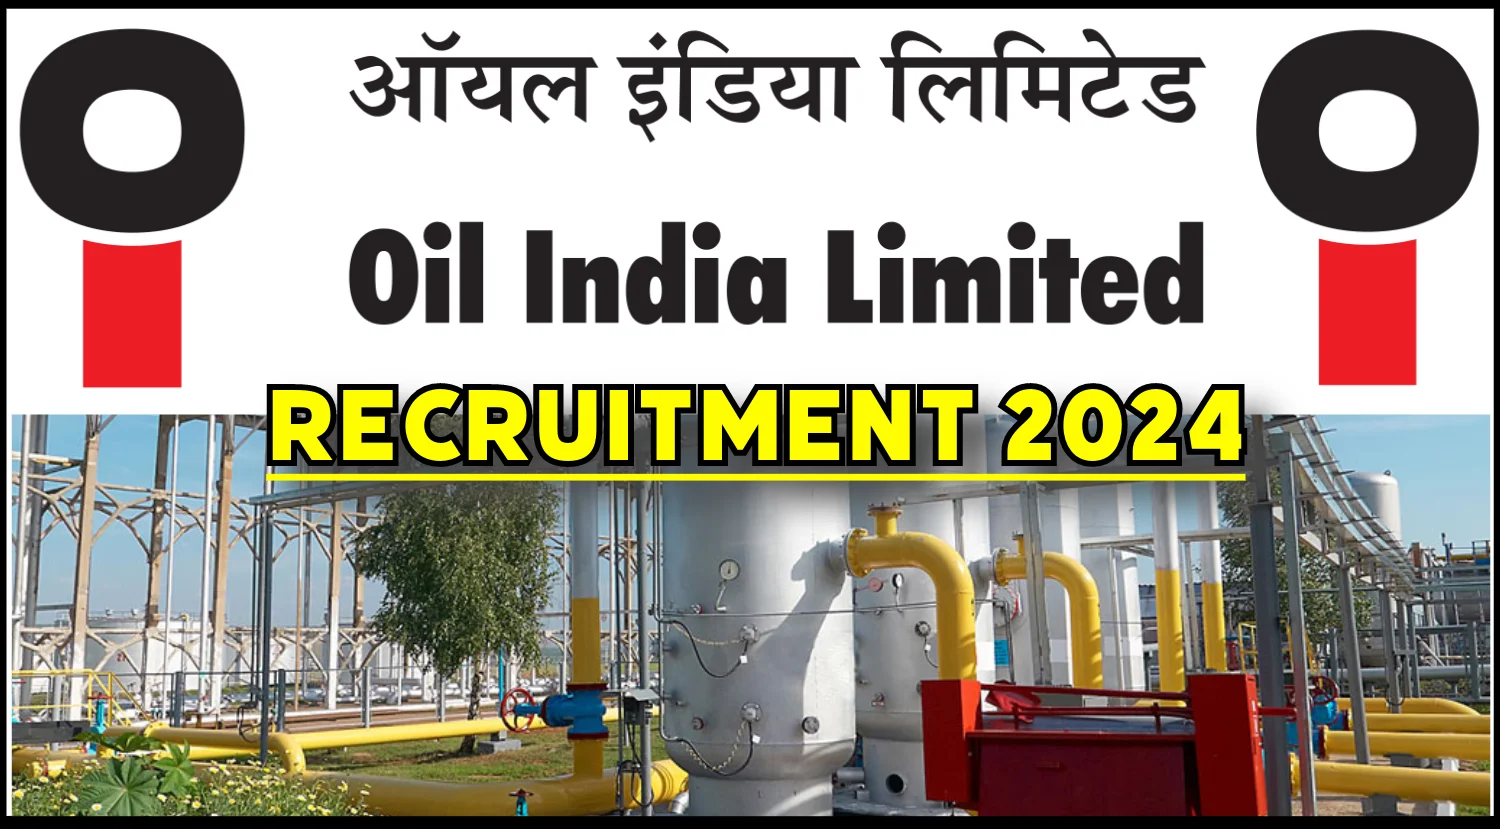 Oil India Limited Recruitment 2024: সরকারি চাকরির দারুণ সুযোগ, এইভাবে করুন  আবেদন - Bengali News | Oil India Limited Recruitment 2024: Oil India Limited  is Recruiting in Various Posts, Know Details of